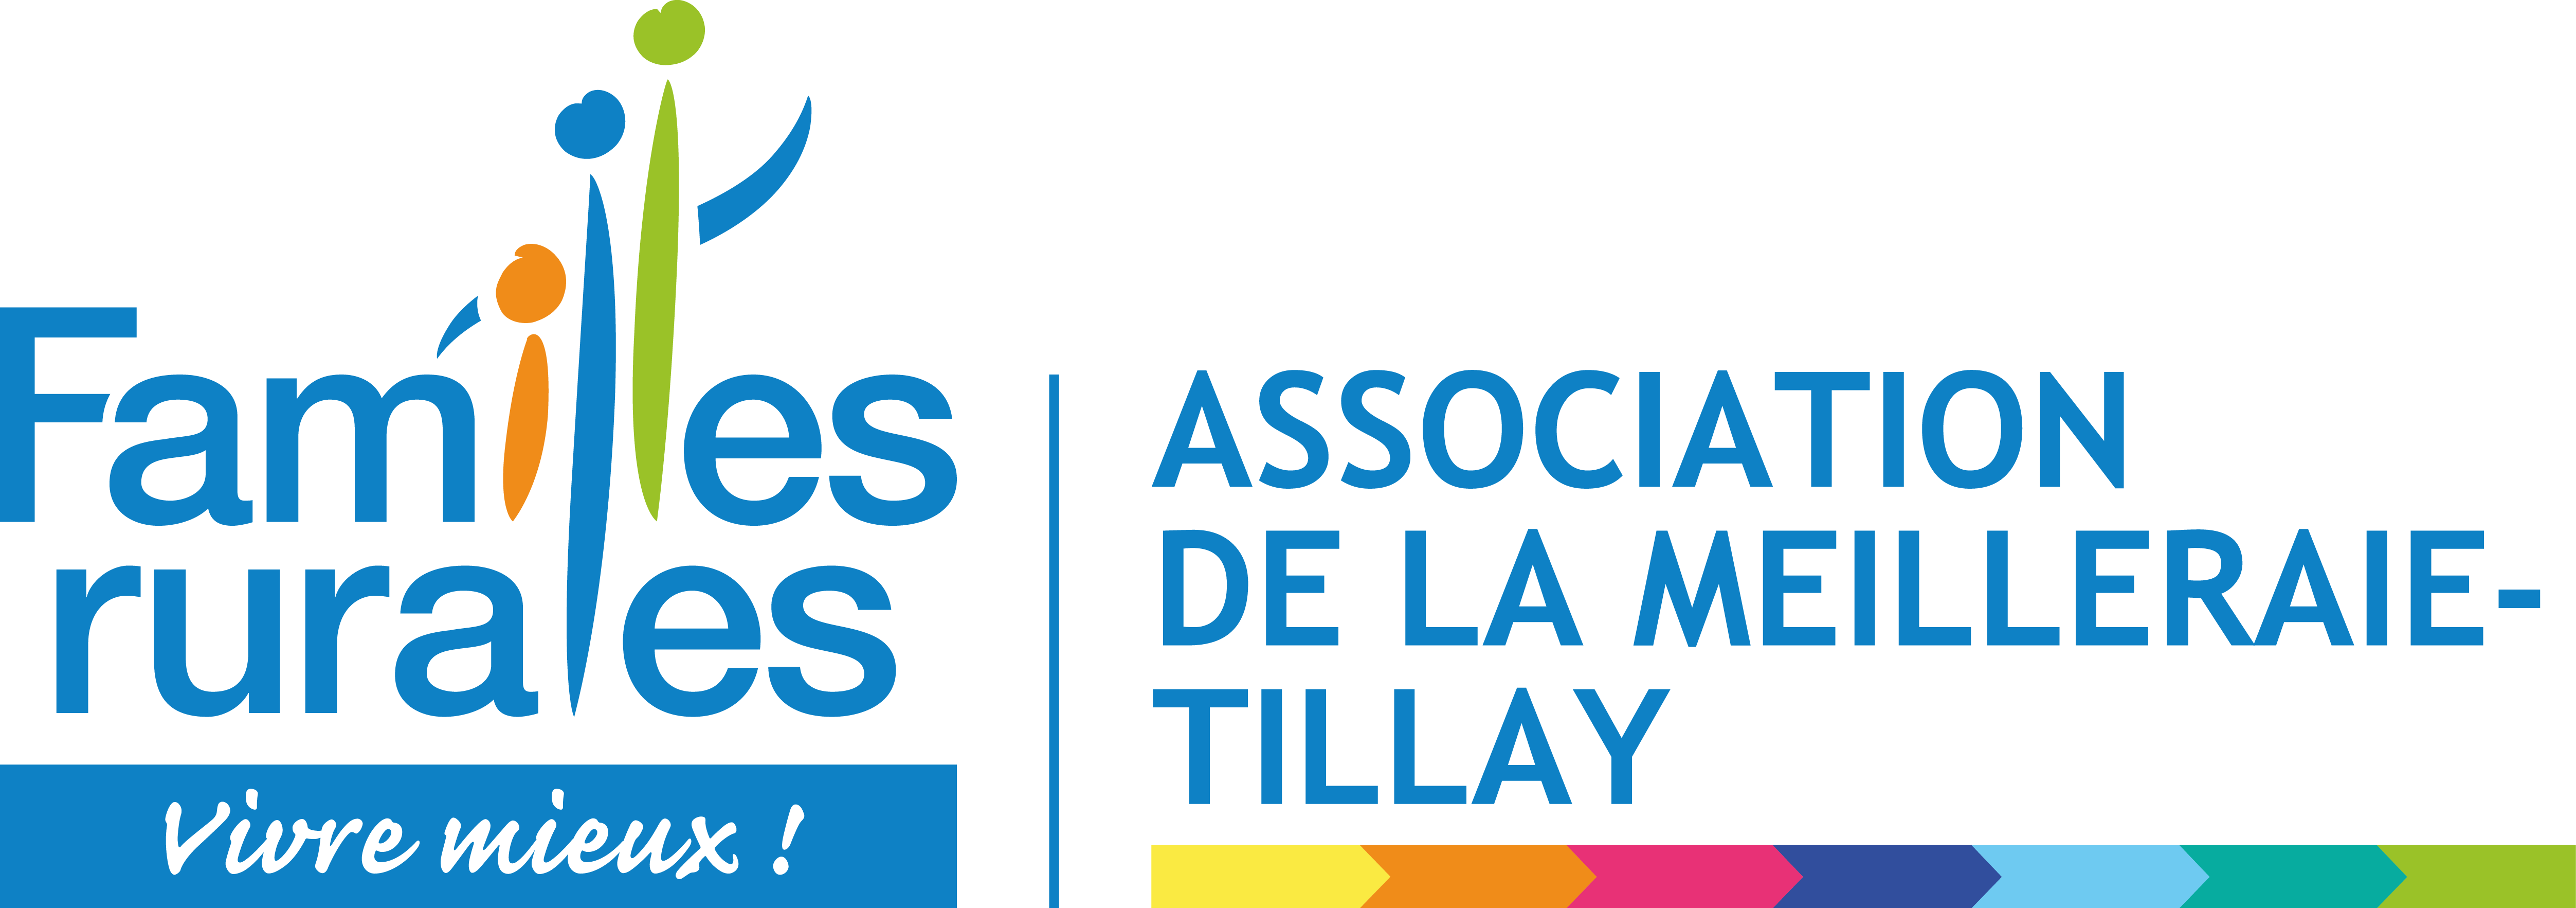 Logo La Meilleraie-Tillay